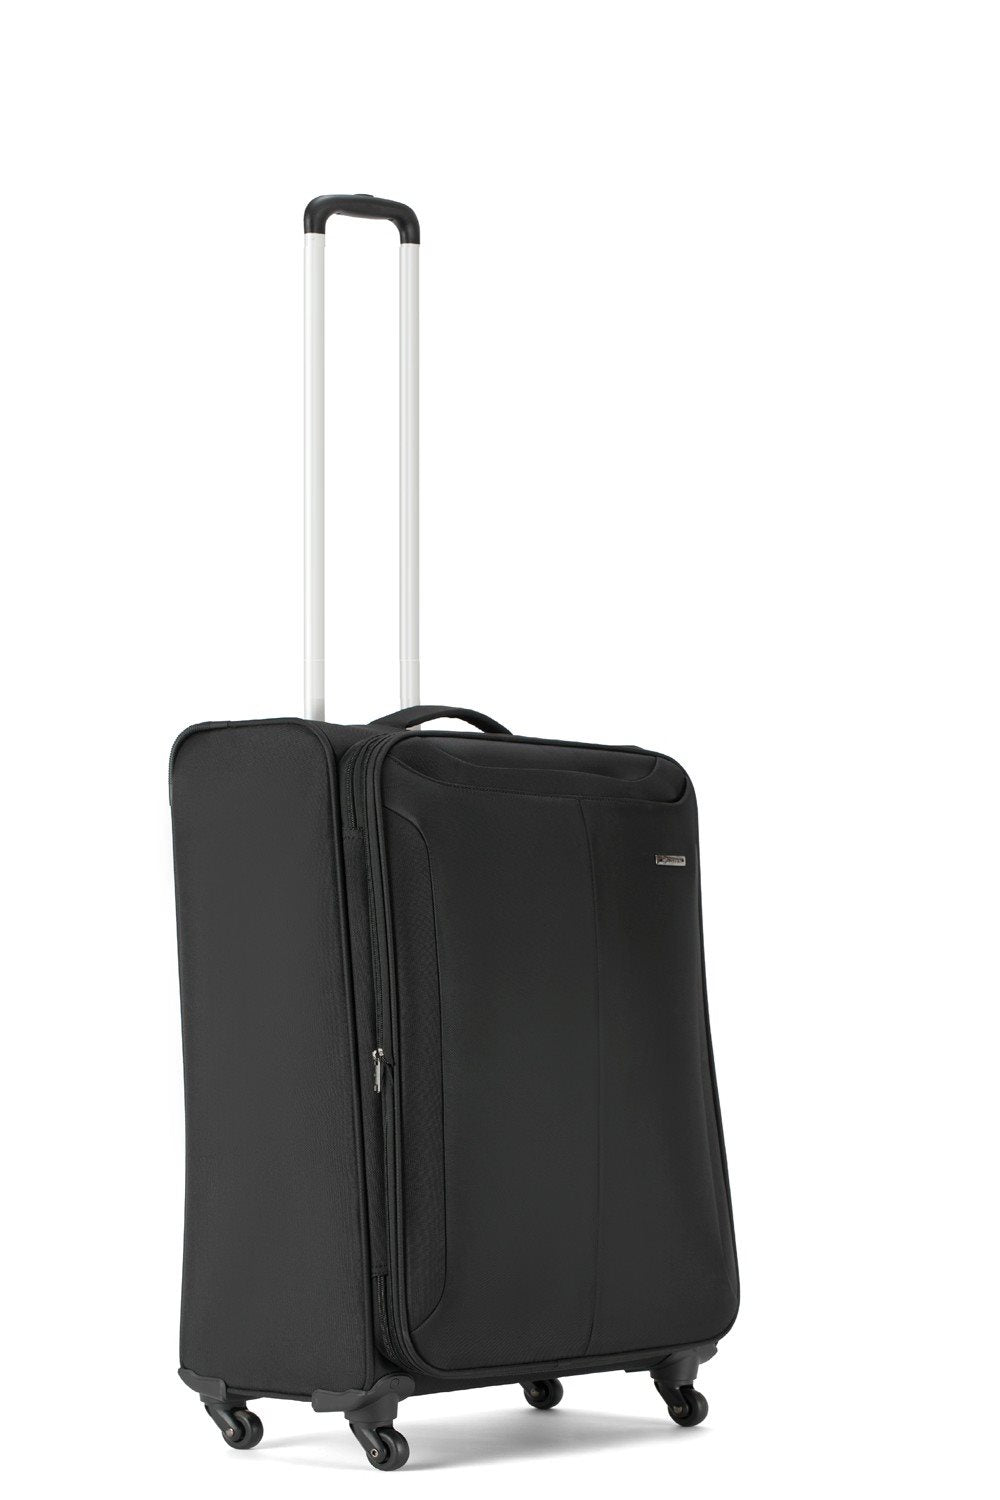 Carlton Rover Spinner Handbagage koffer 55 cm - Black Handbagage Koffer - Reisartikelen-nl